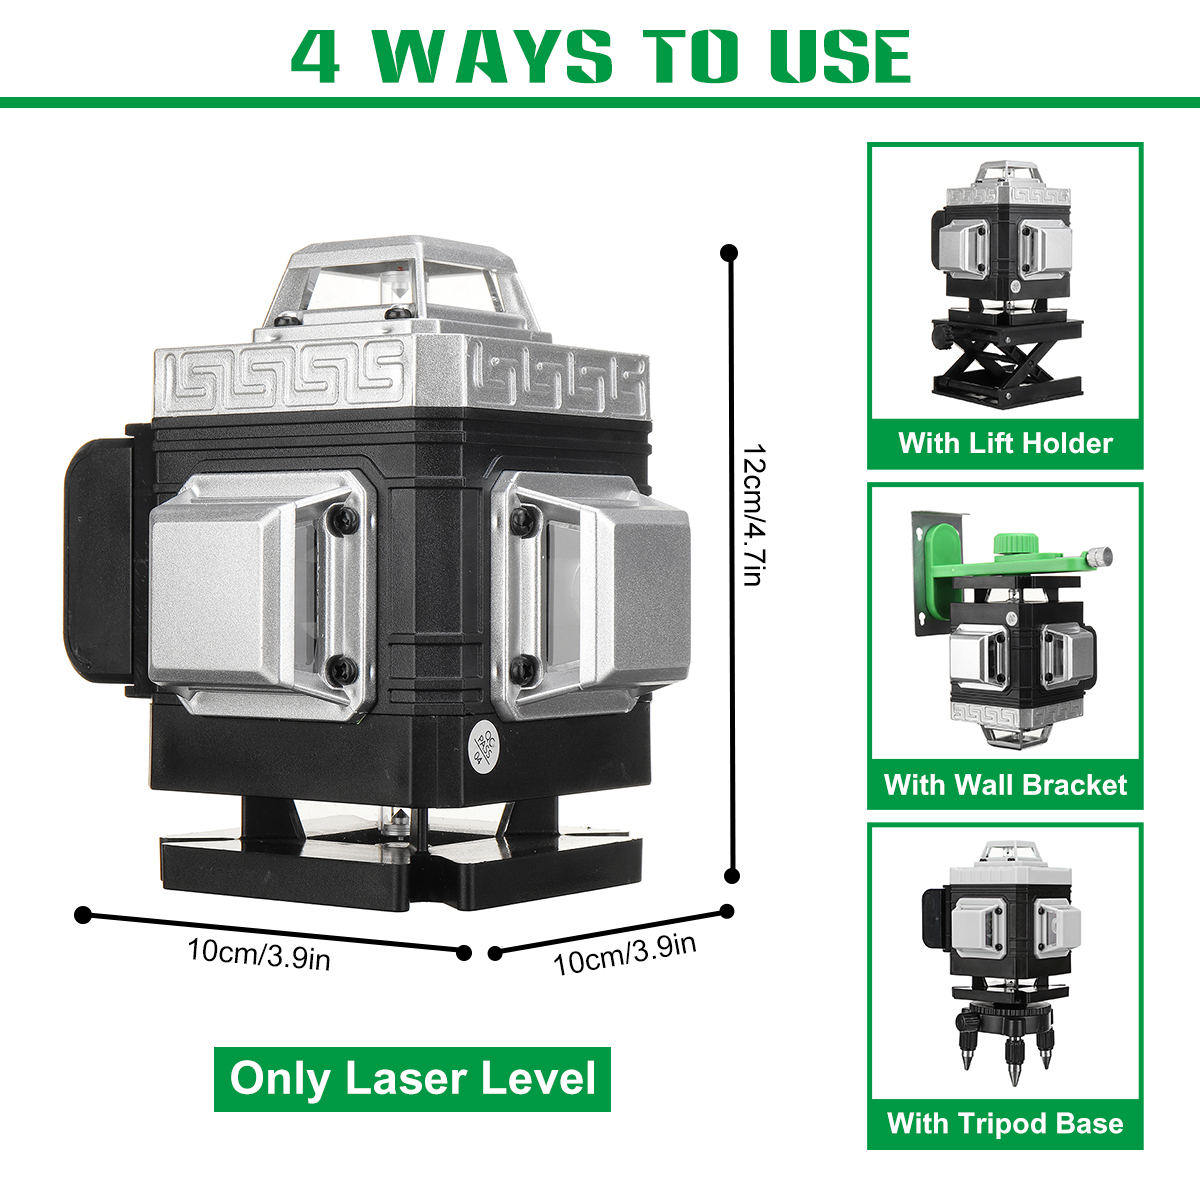 81216-Line-360deg-4D-Line-Laser-Level-Green-Light-Self-Leveling-Cross-Measure-Tool-Kit-1864007-6